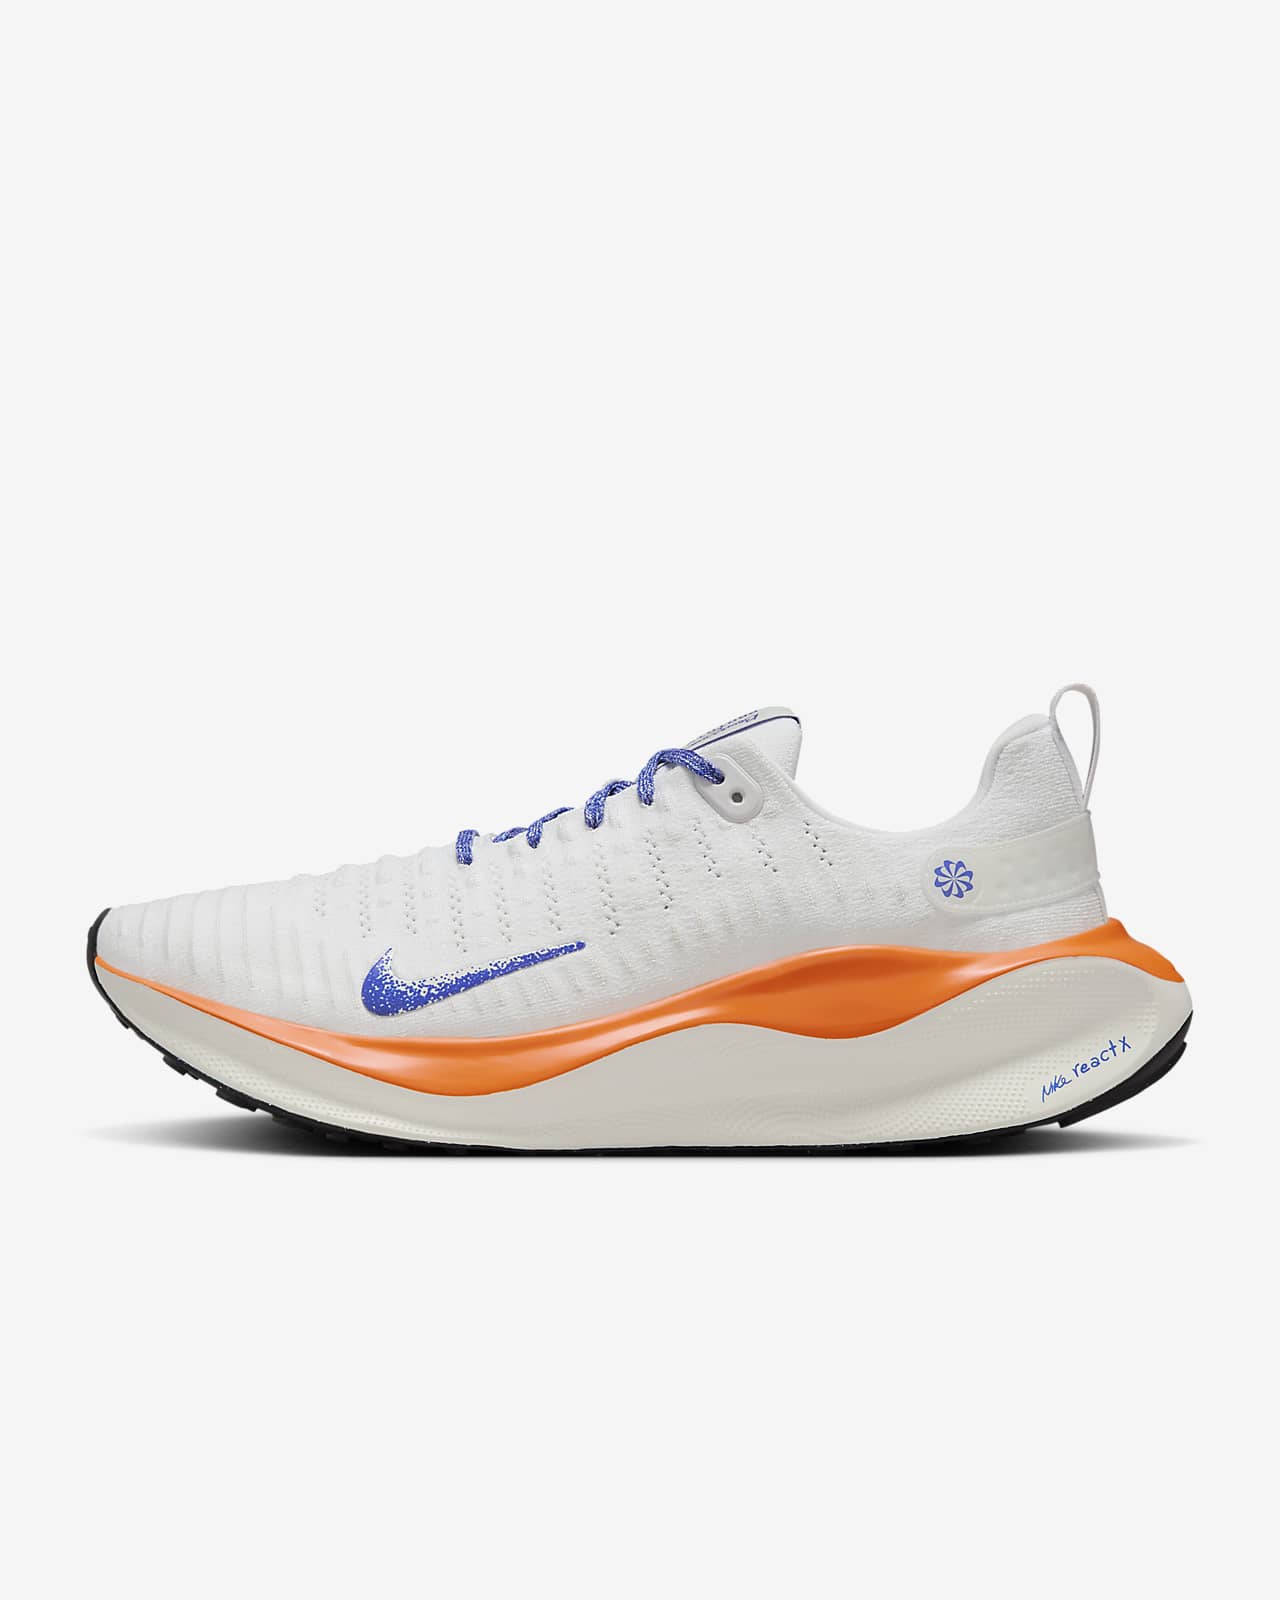 Nike InfinityRN 4 Blueprint 「蓝图」 配色男子公路跑步鞋